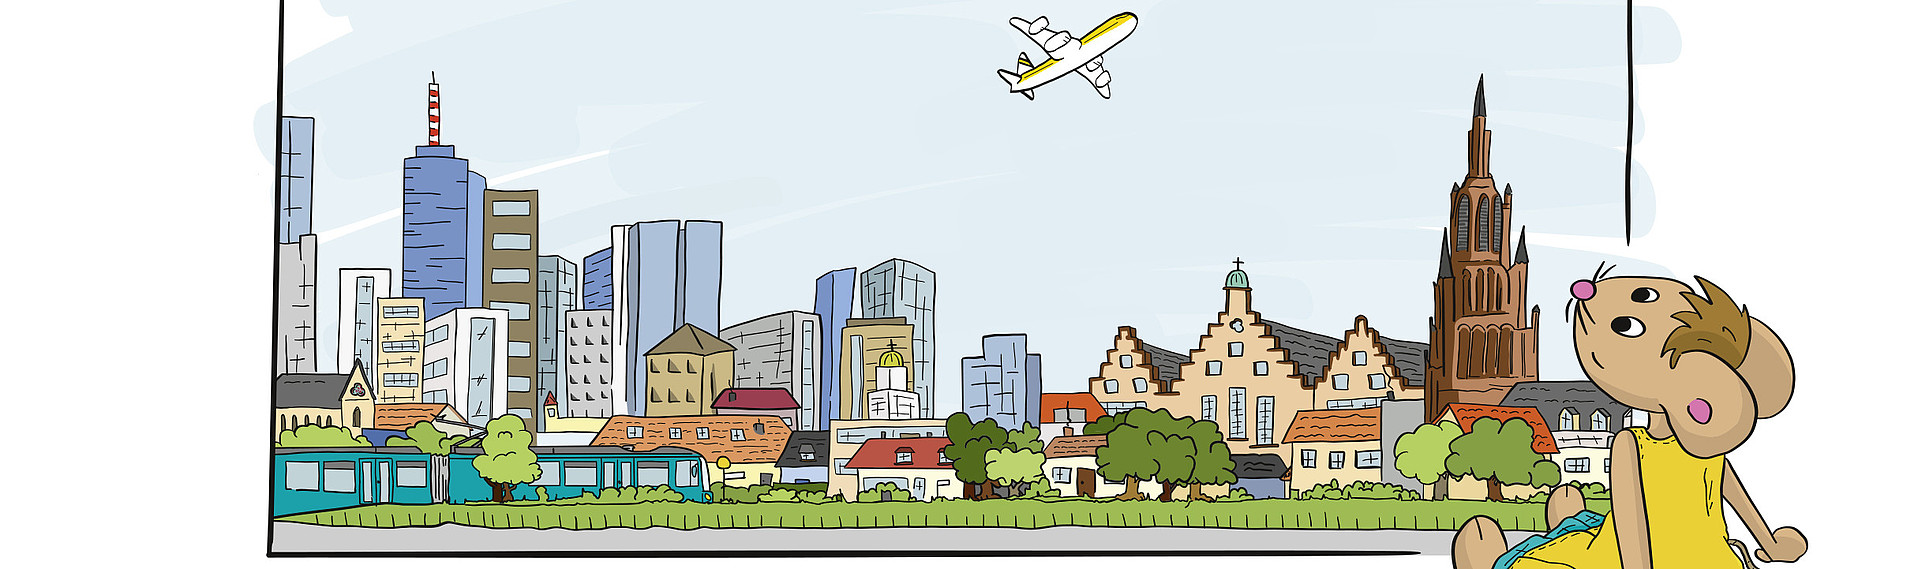 Zeichentrickgrafik mit Lisa der Maus und dem Stadtbild von Frankfurt am Main